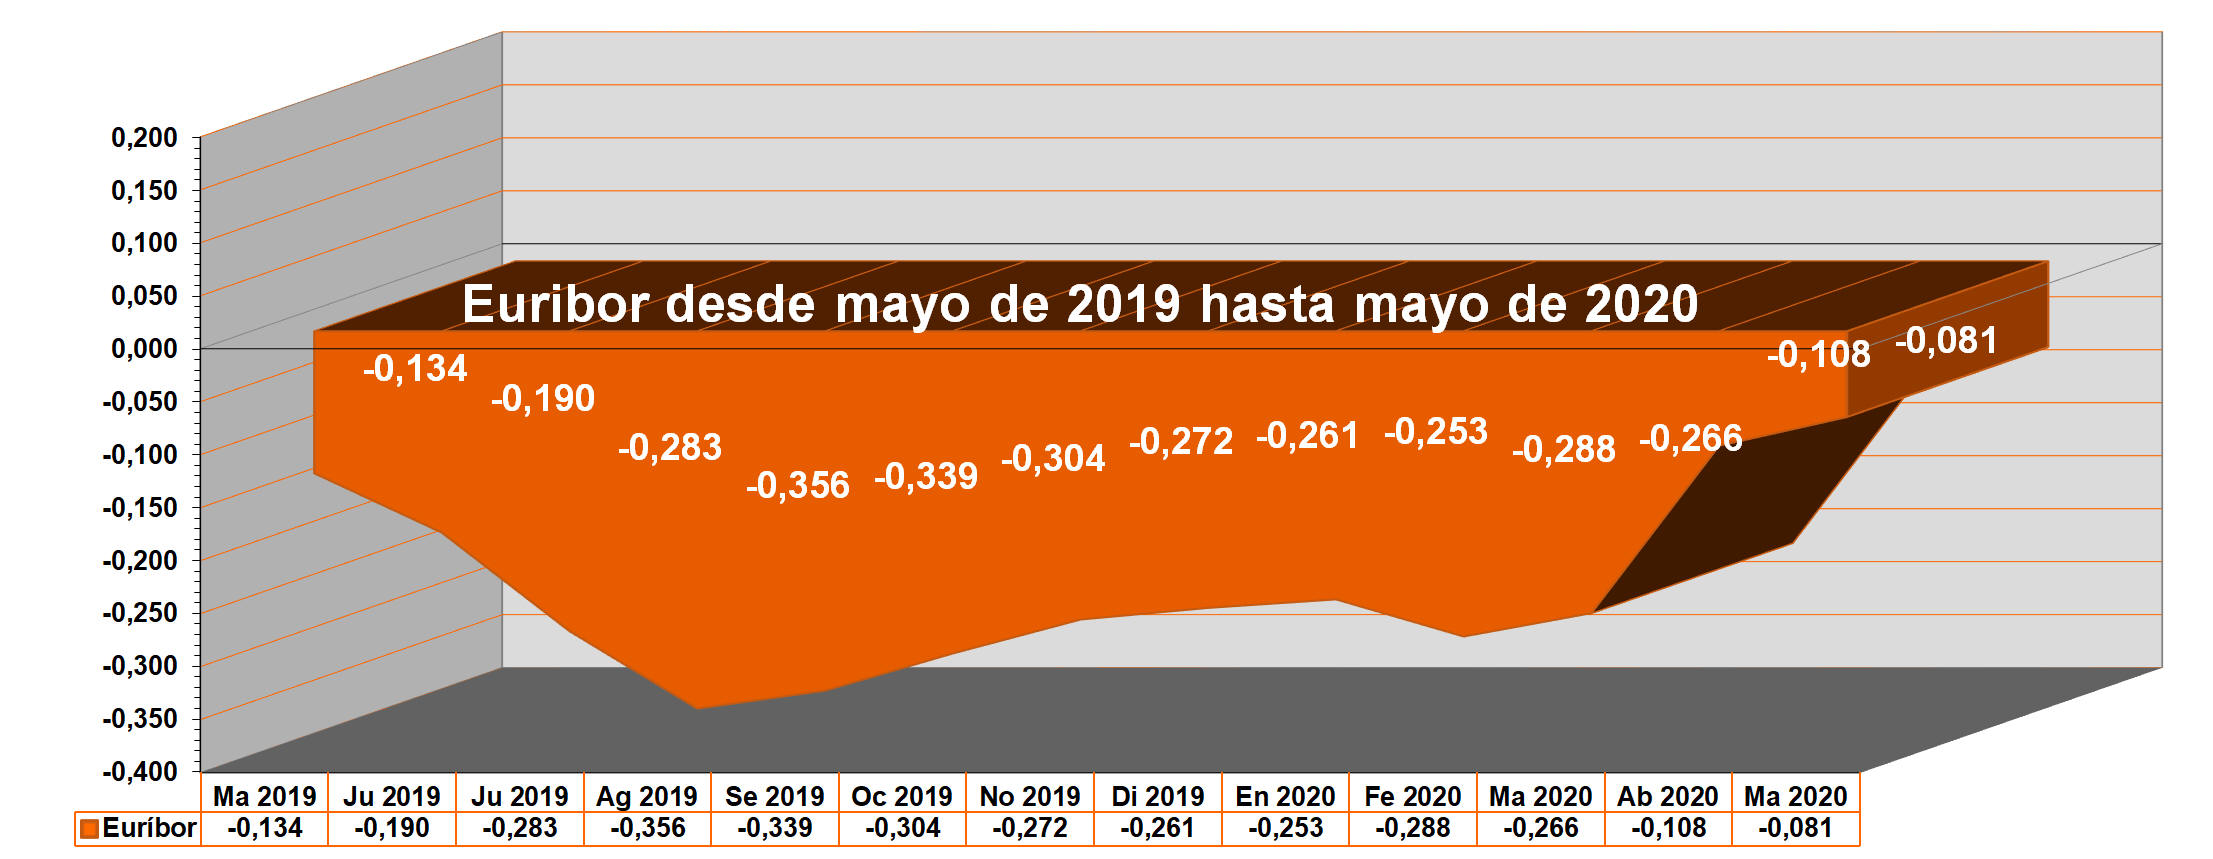 Gráfico anual del Euribor desde mayo de 2019 hasta mayo de 2020.